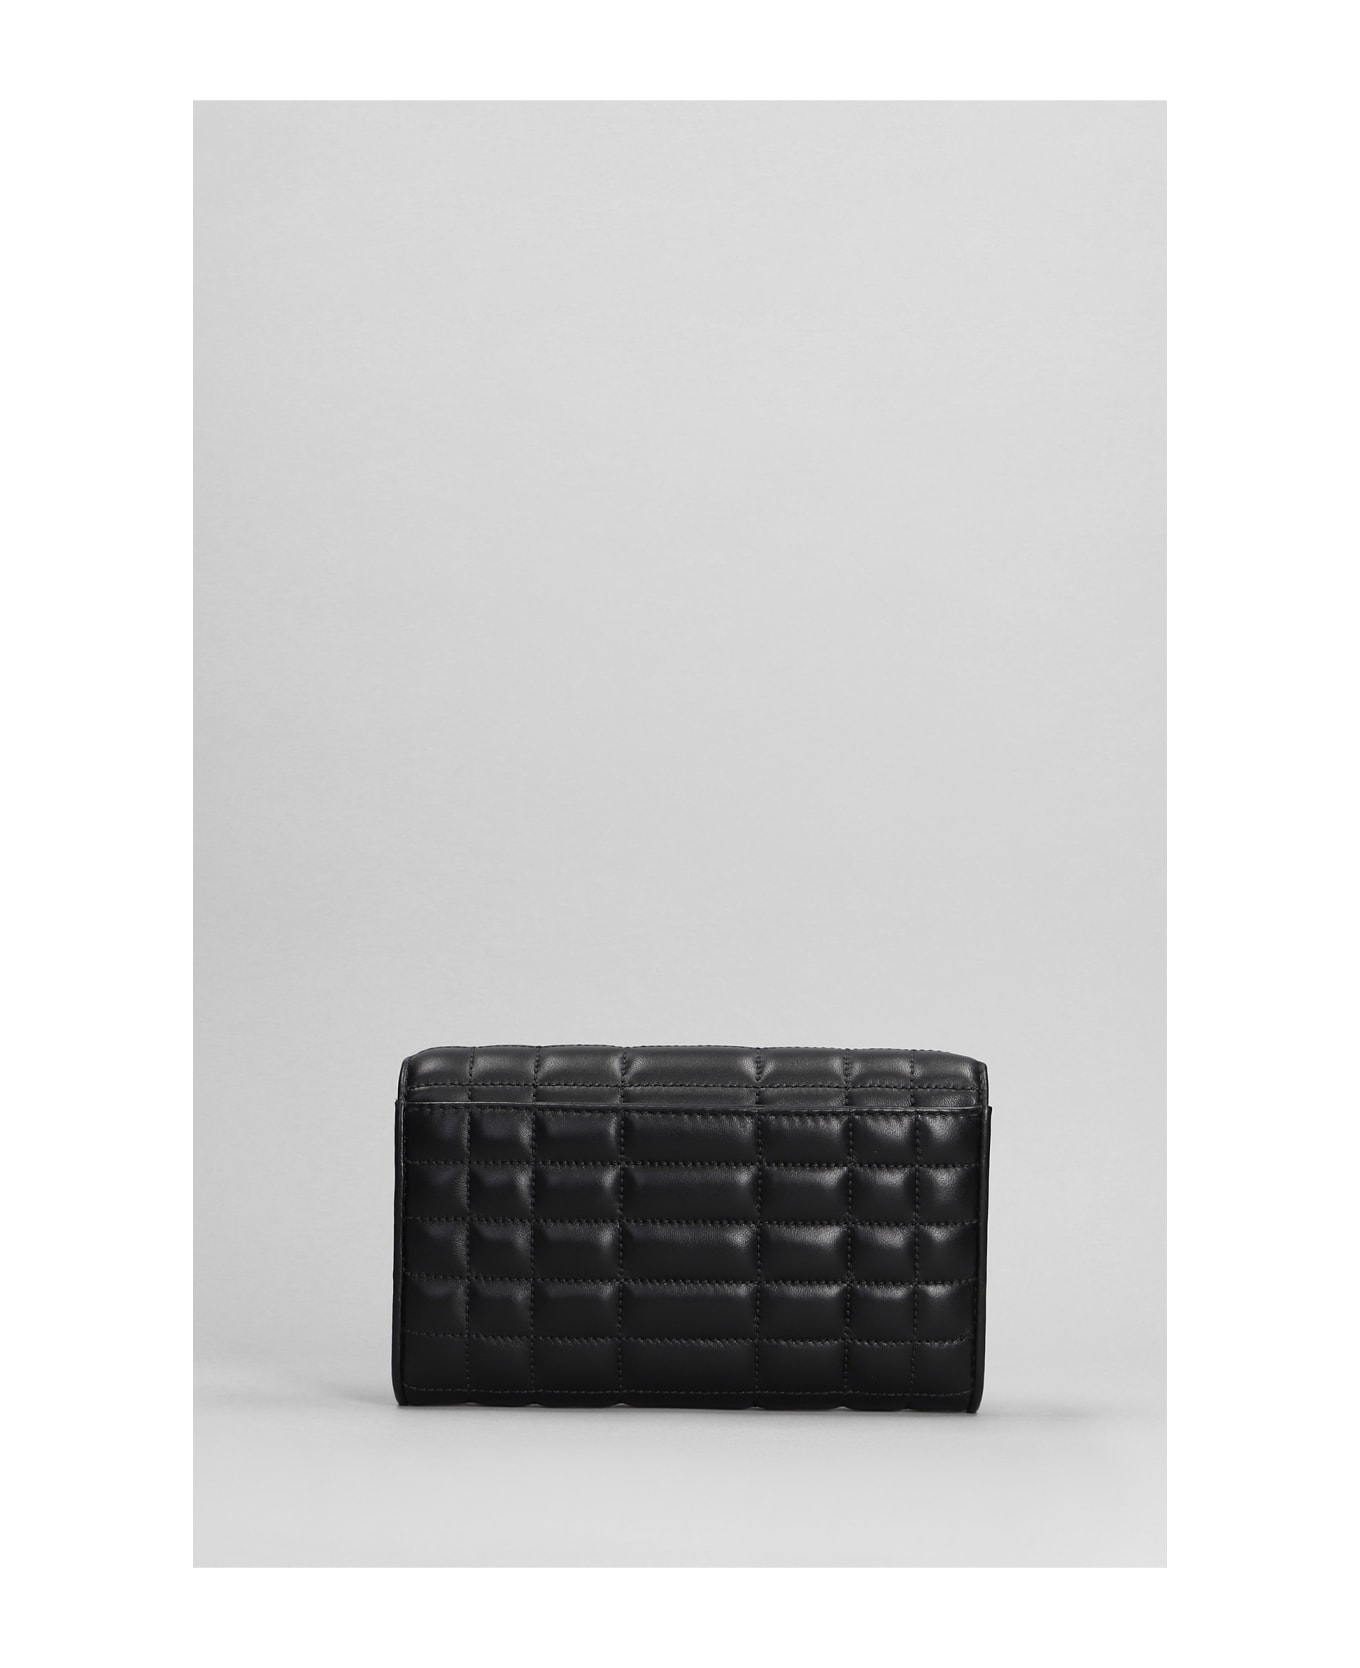 Michael Kors Tribeca Shoulder Bag In Black Leather - black クラッチバッグ